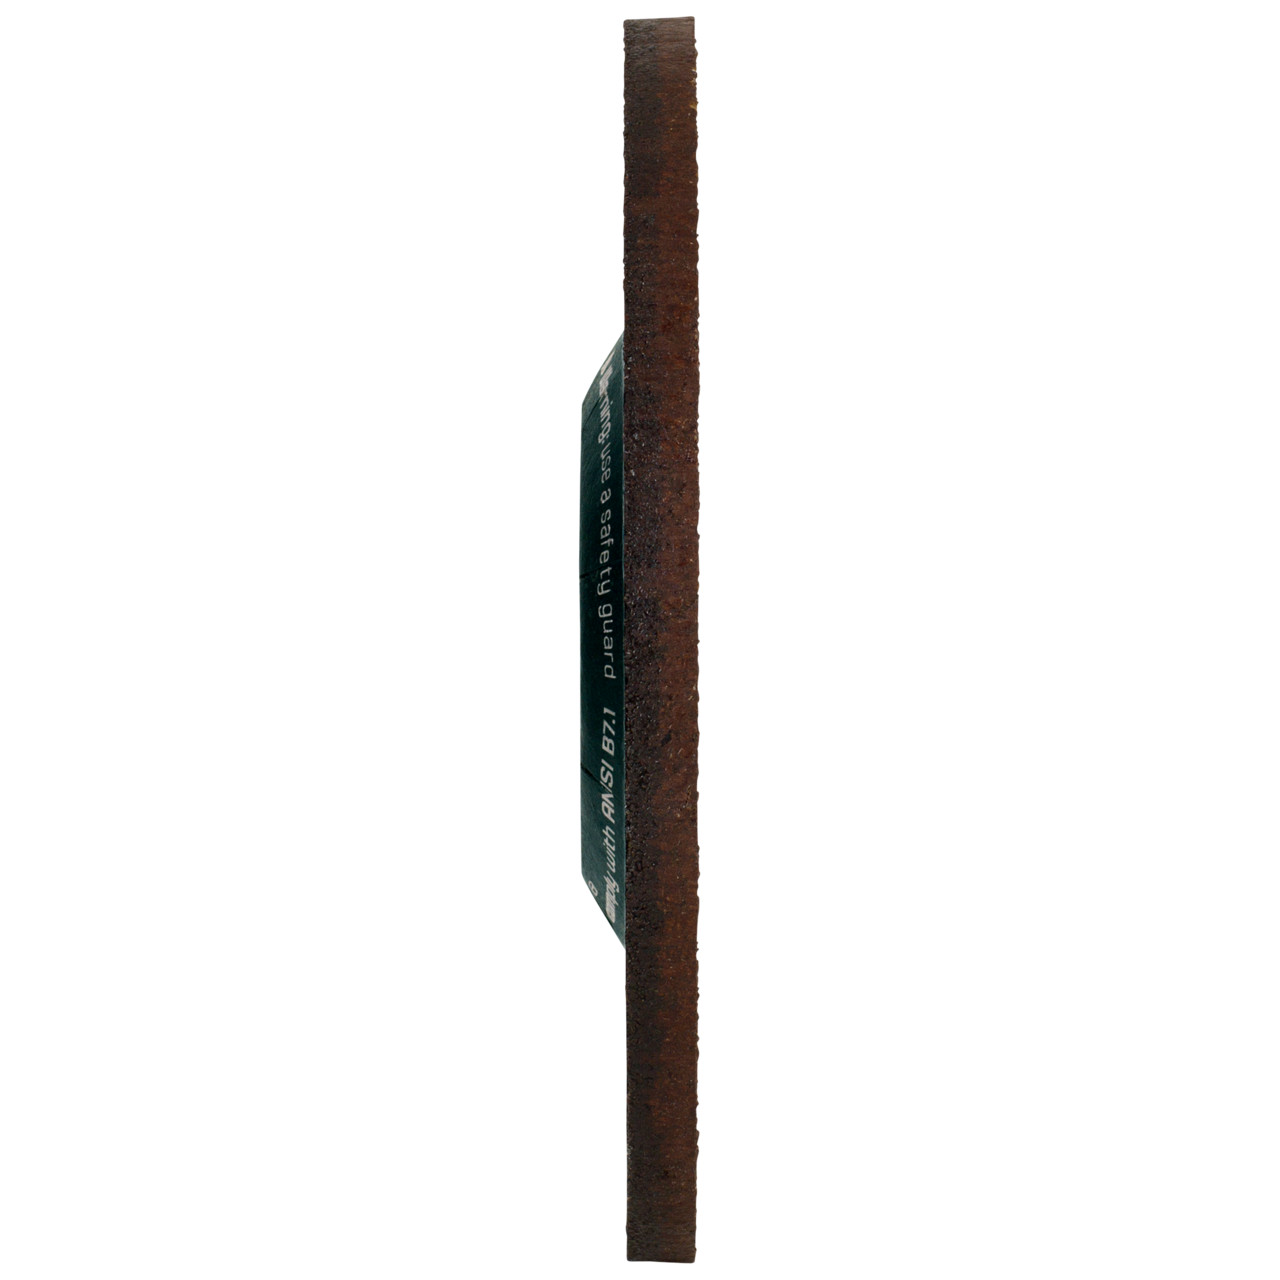 Tyrolit Voorslijpschijf DxUxH 115x7x22,23 CERABOND X voor staal en roestvast staal